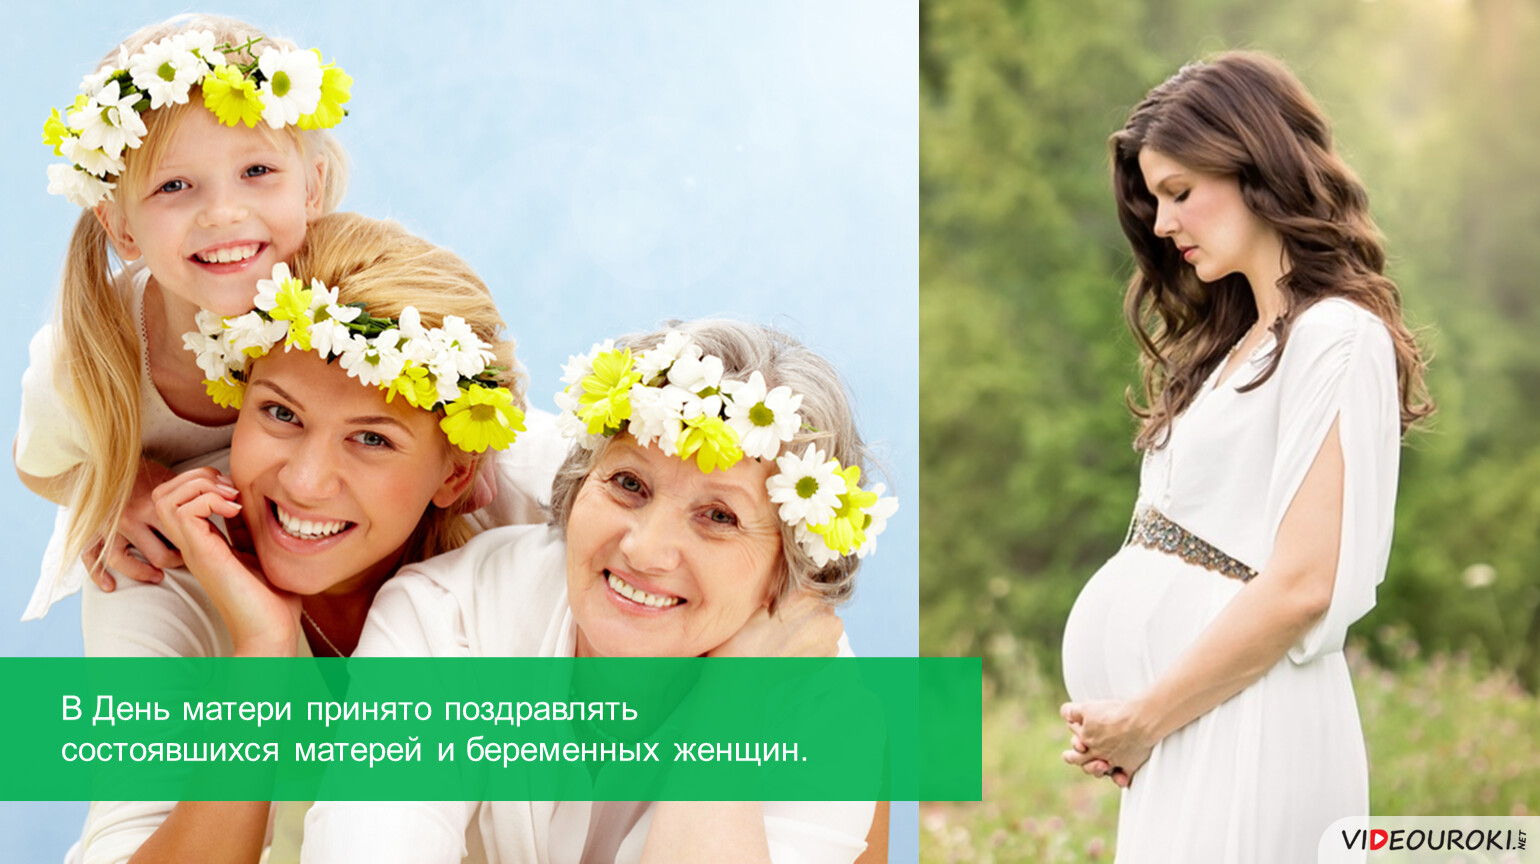 Принять маму. День материнства и красоты в Армении. Как принять материнство. В день матери принято